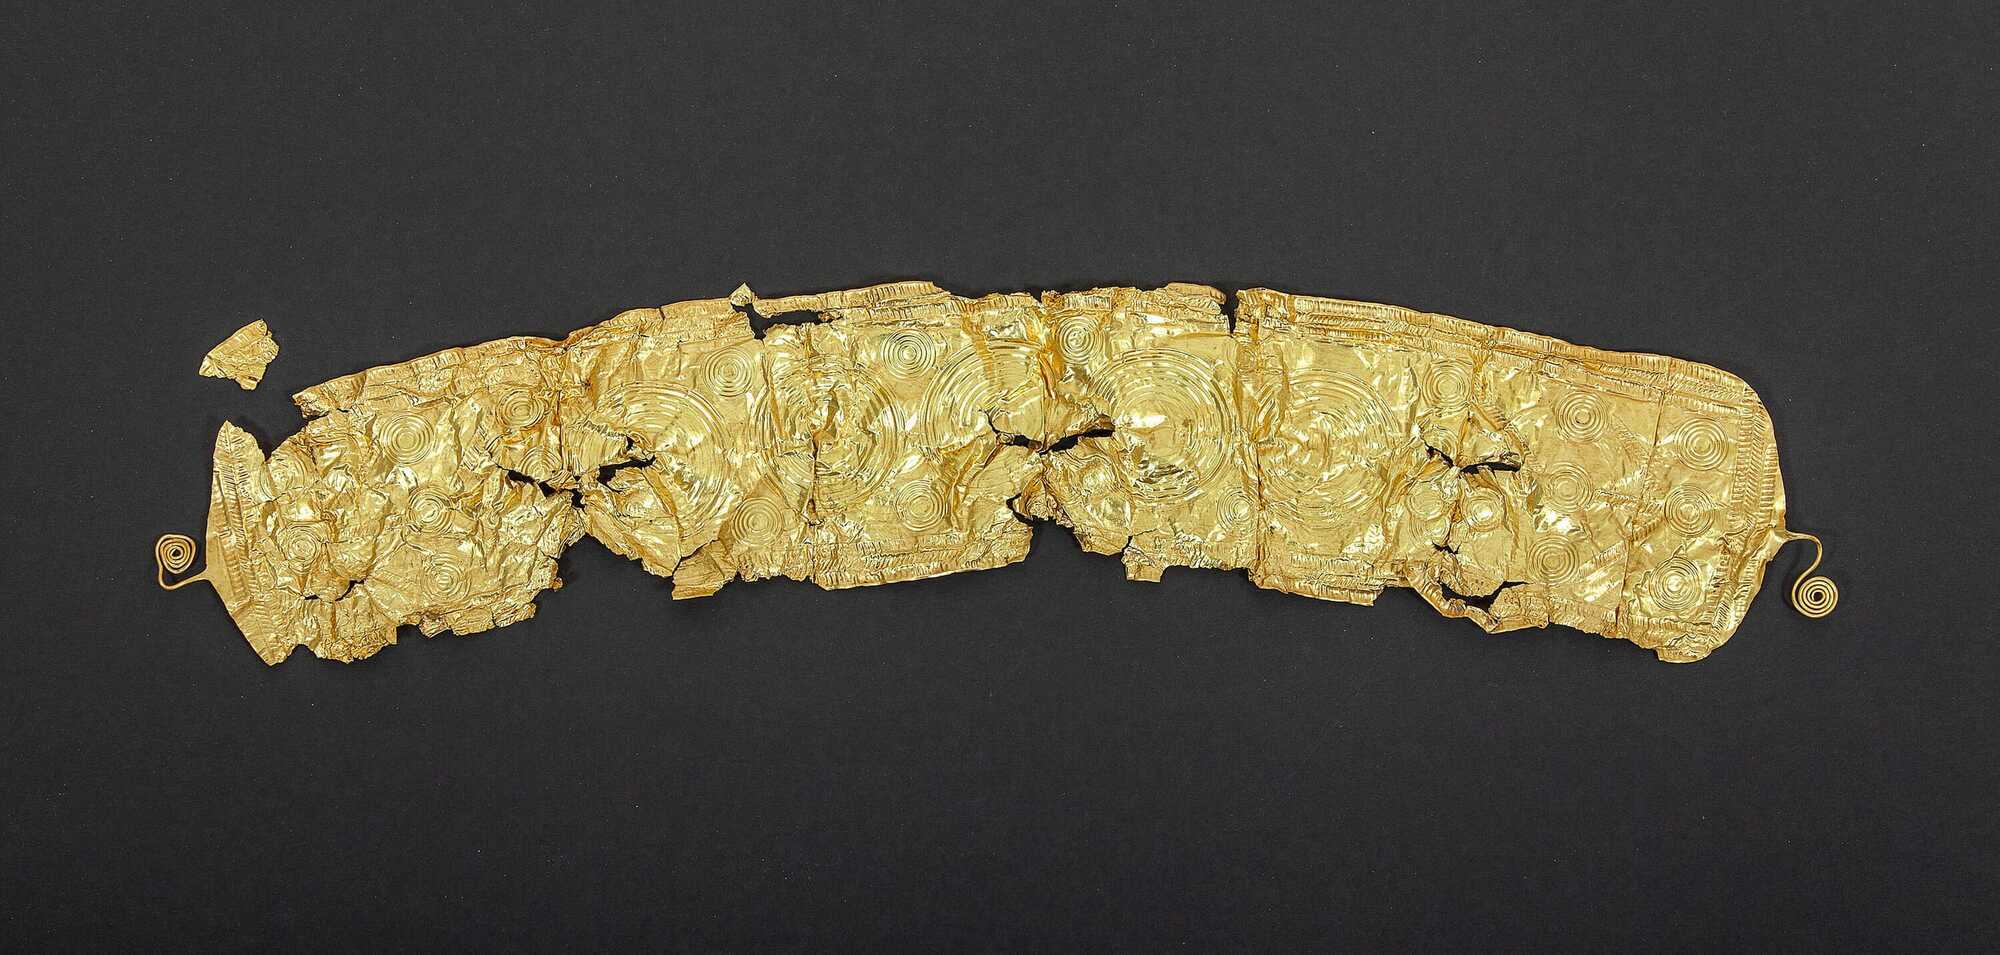 В Чехии фермер случайно обнаружил золотой пояс бронзового века (фото)